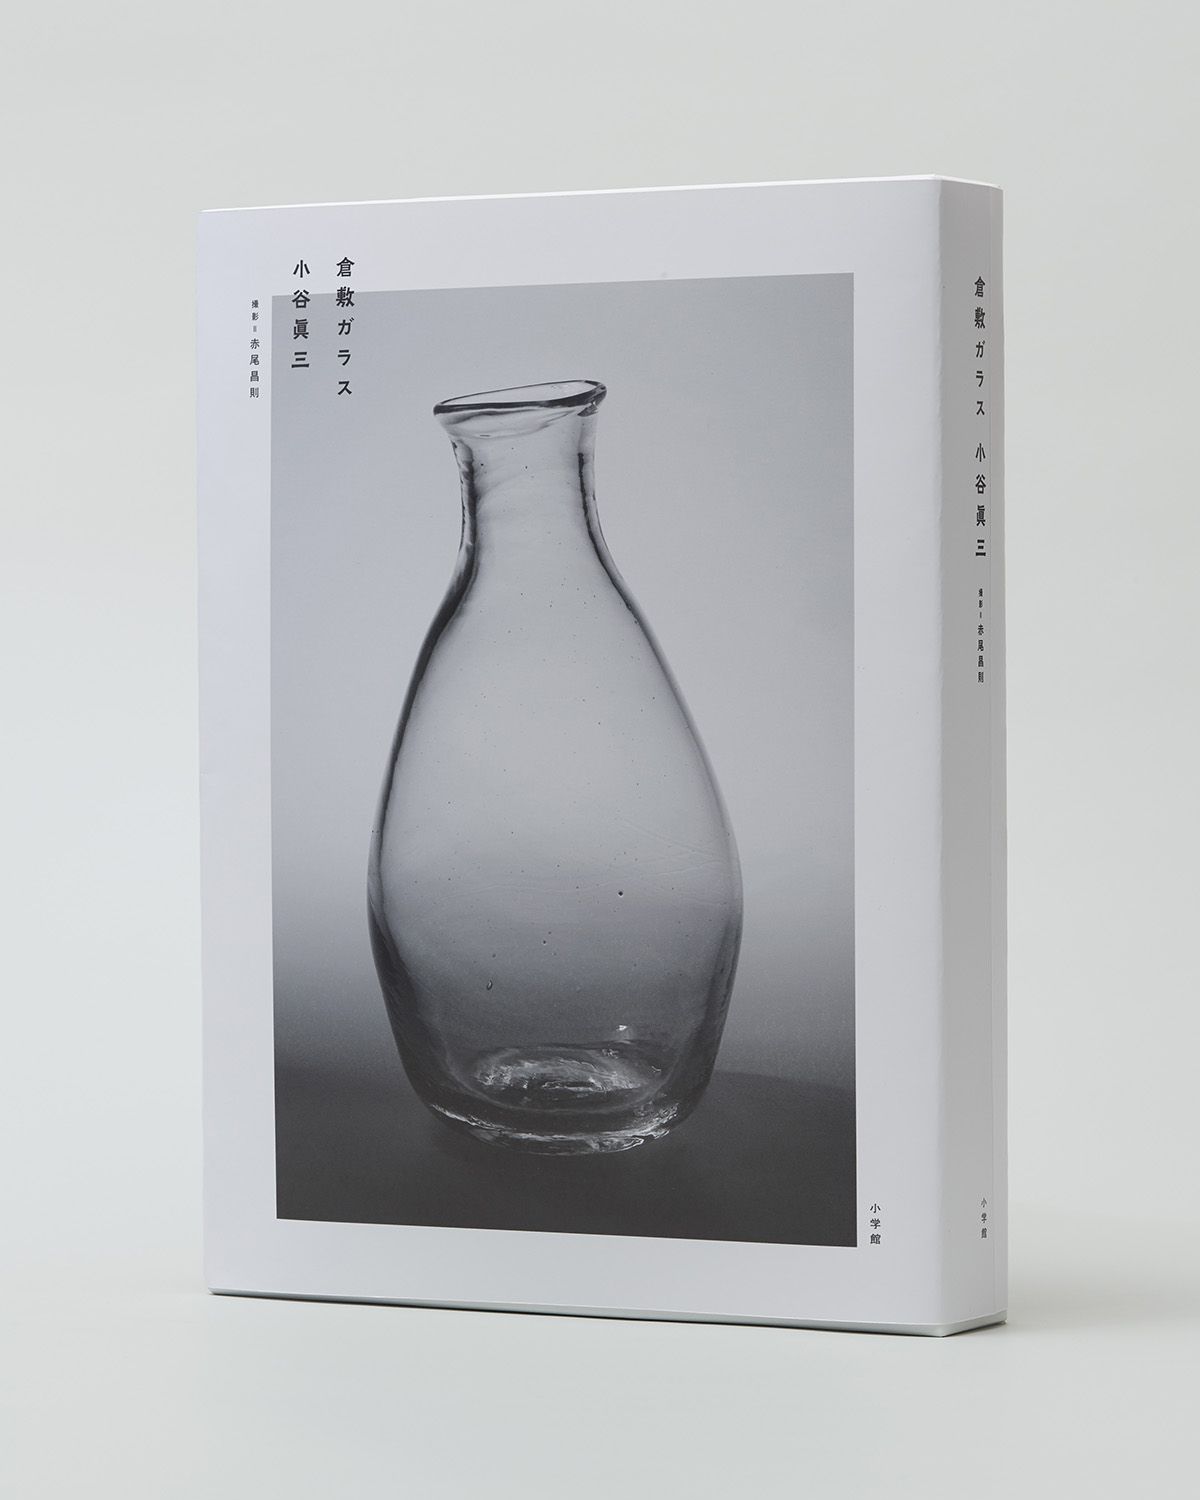 赤尾昌則が撮り下ろしたガラス作品をまとめた上巻と、小谷眞三の人柄や仕事ぶりを紹介した下巻の２冊組。